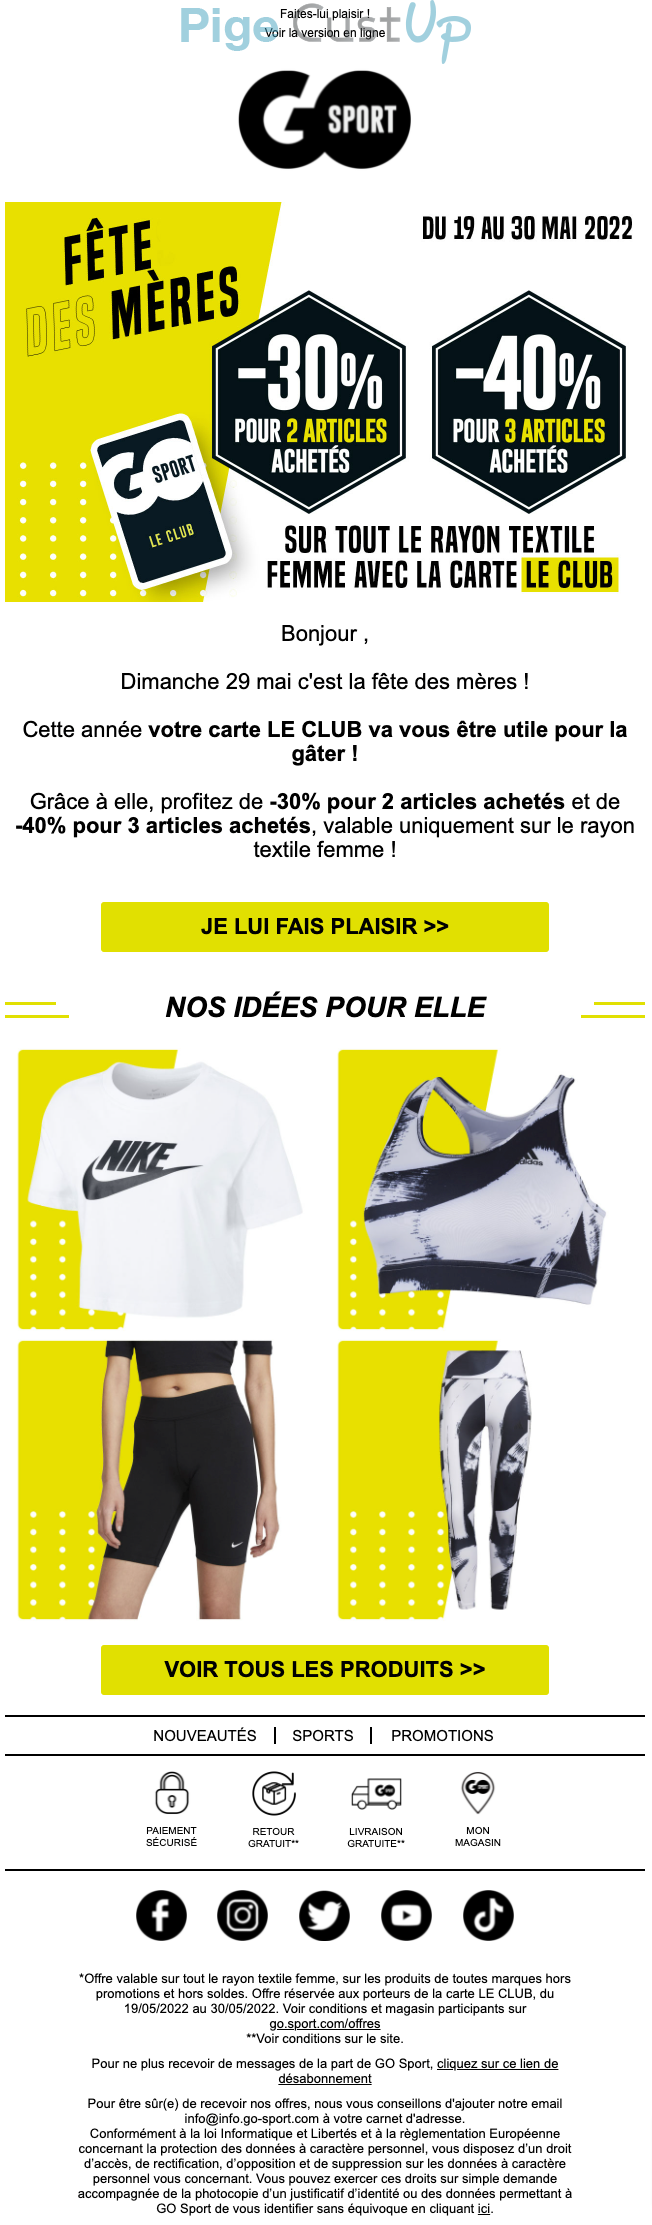 Exemple de Type de media   - Go Sport - Marketing relationnel - Calendaire (Noël, St valentin, Vœux, …)